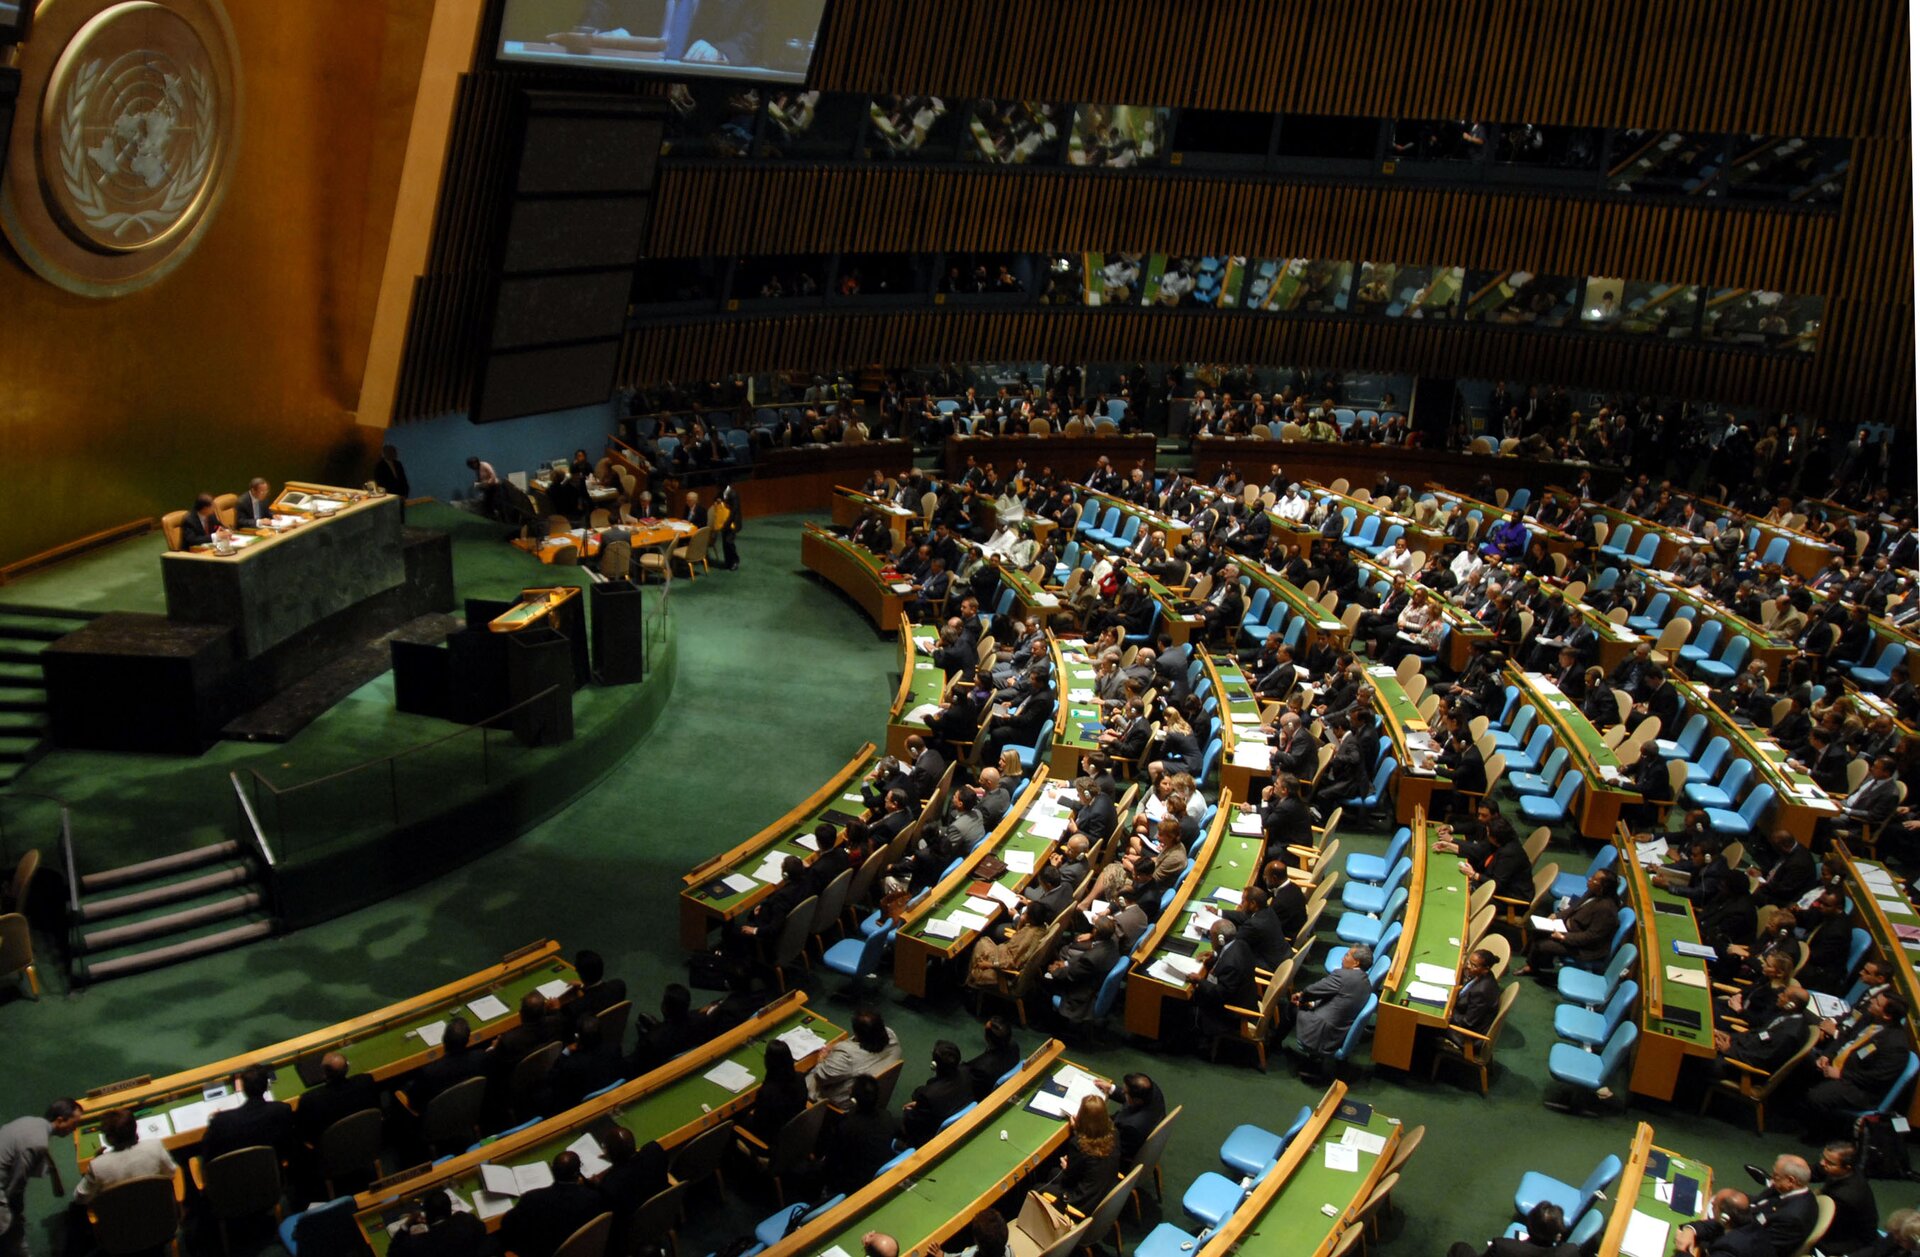 W części głównej widoczne logo ONZ. Na podwyższeniu za stołem zasiada Sekretarz Generalny ONZ. Poniżej znajduje się mównica, dla tych , którzy planują zabrać głos. Do mównicy prowadzą schody. W pozostałej części sali umieszczone są krzesła dla przedstawicieli państw biorących udział w obradach, gości zaproszonych, mediów. Na stołach widoczne są kartki. Zawieszony jest telebim.